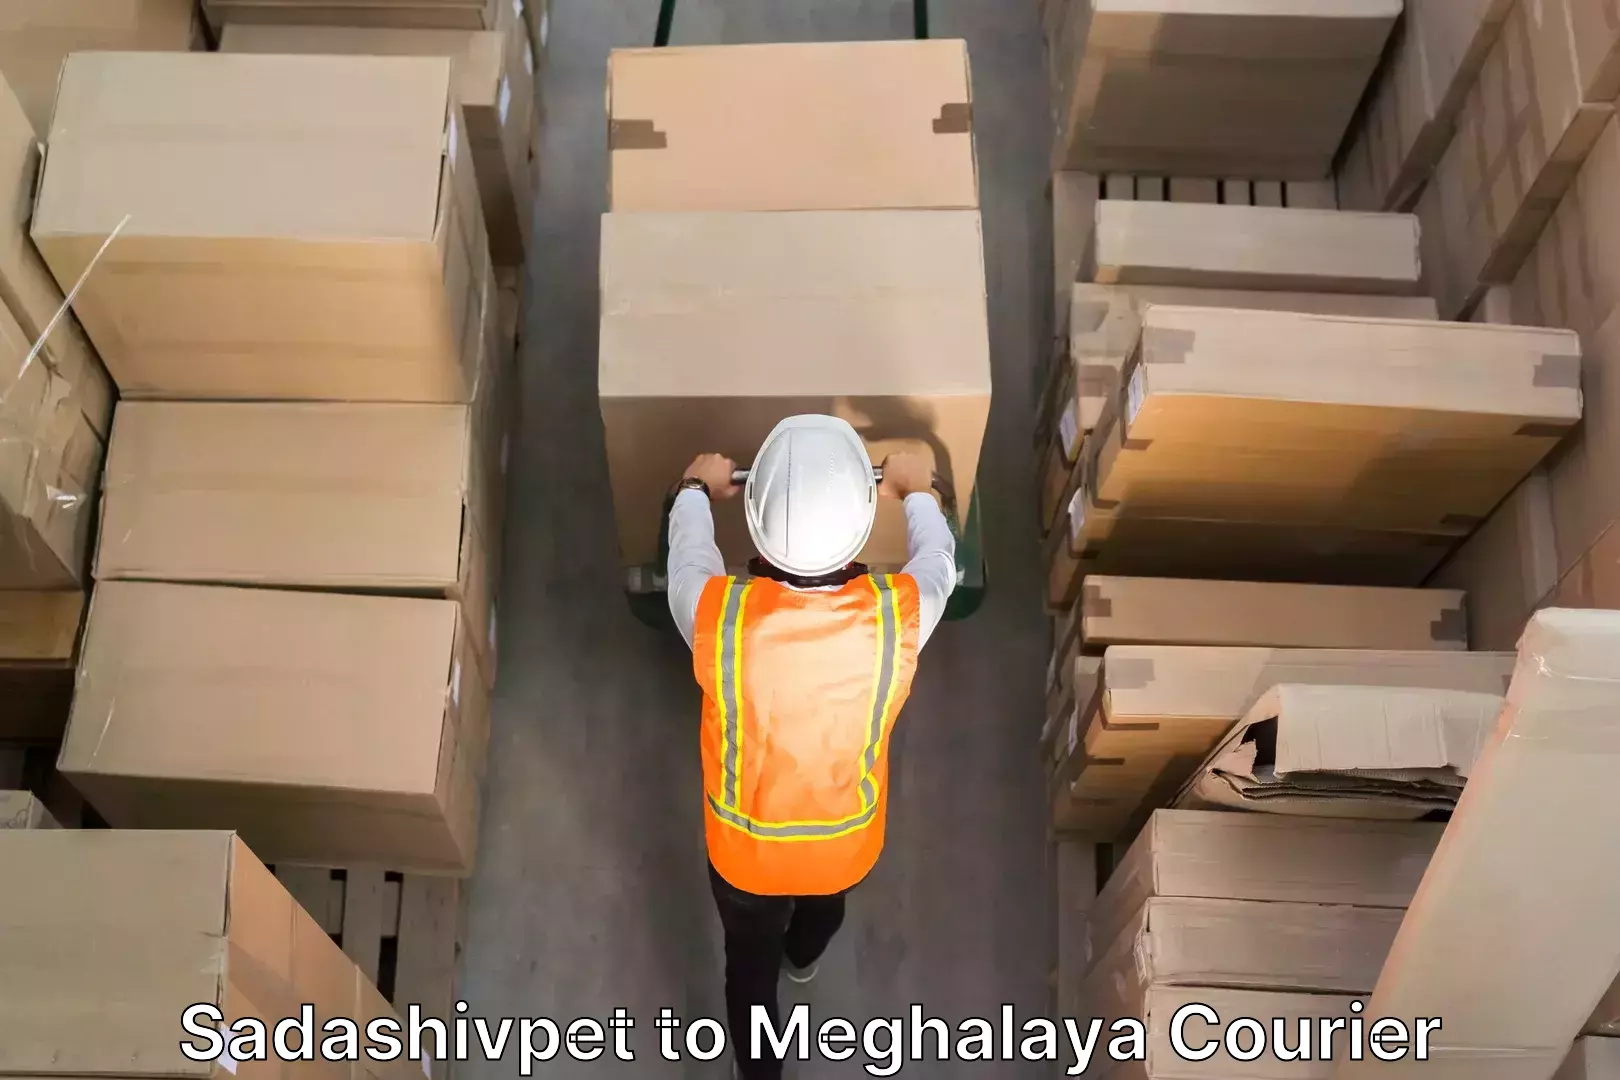 Trusted moving company Sadashivpet to Meghalaya